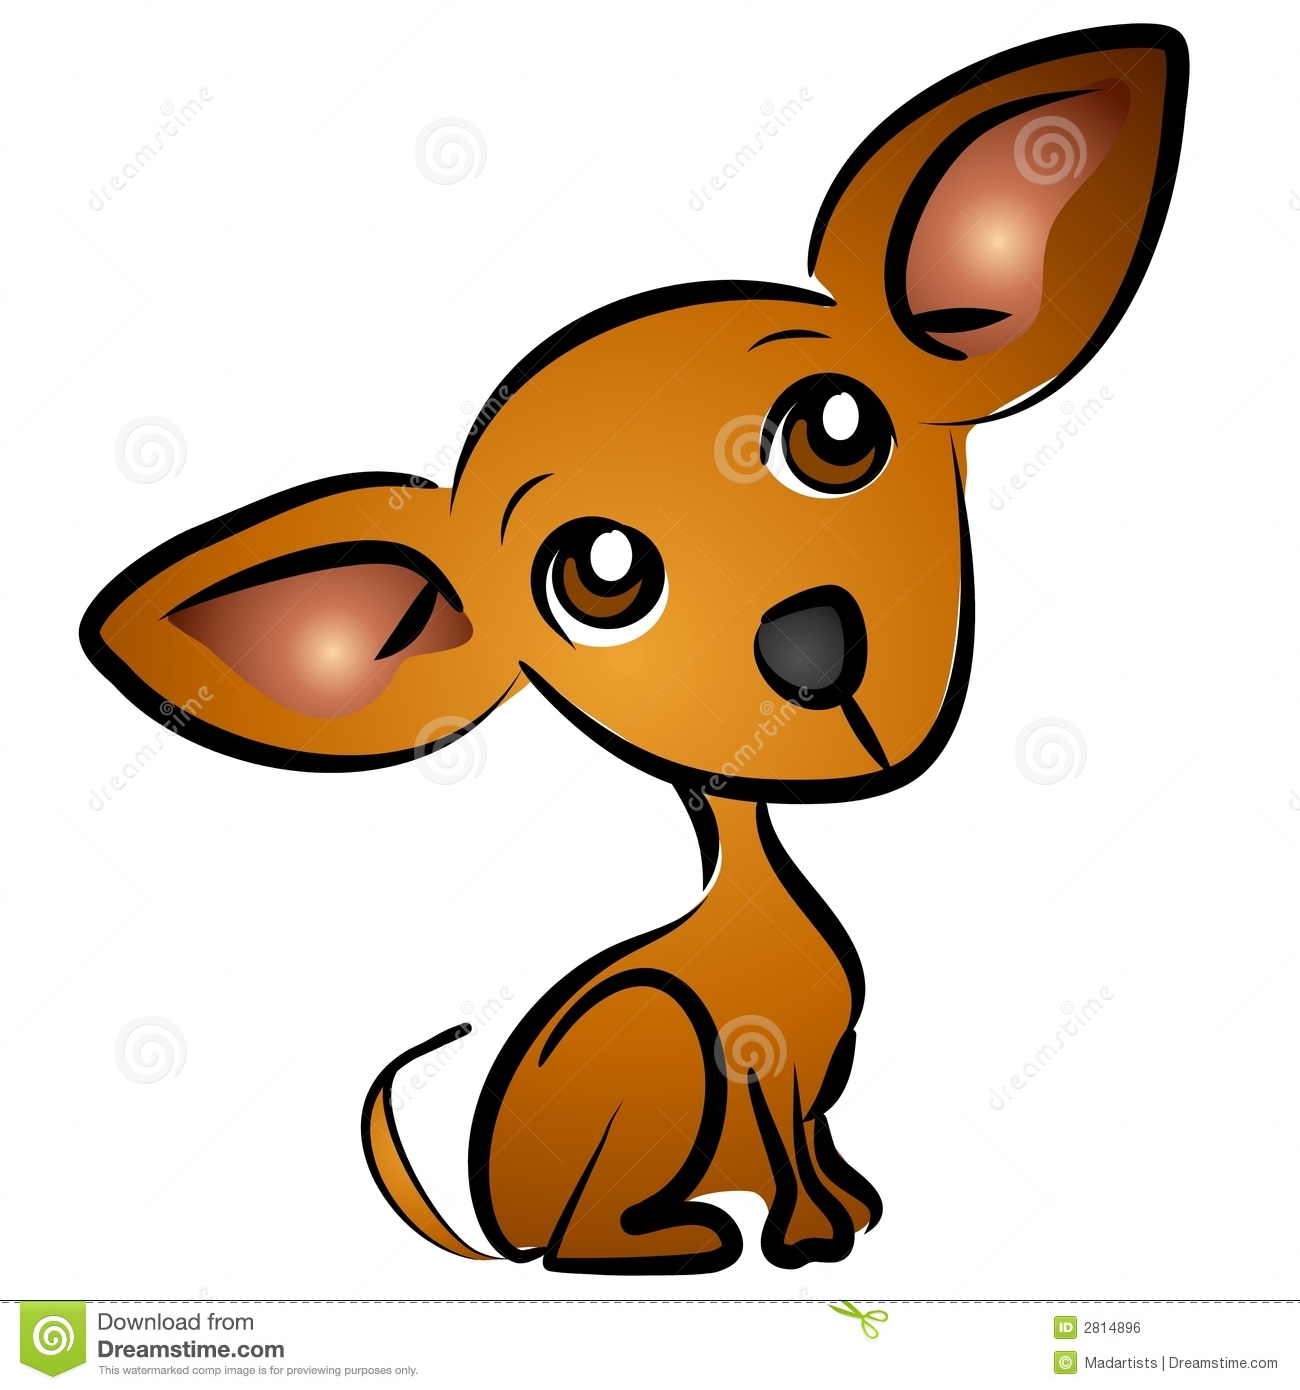 Sad eyes dog puppy clip art royalty free stock image image 6